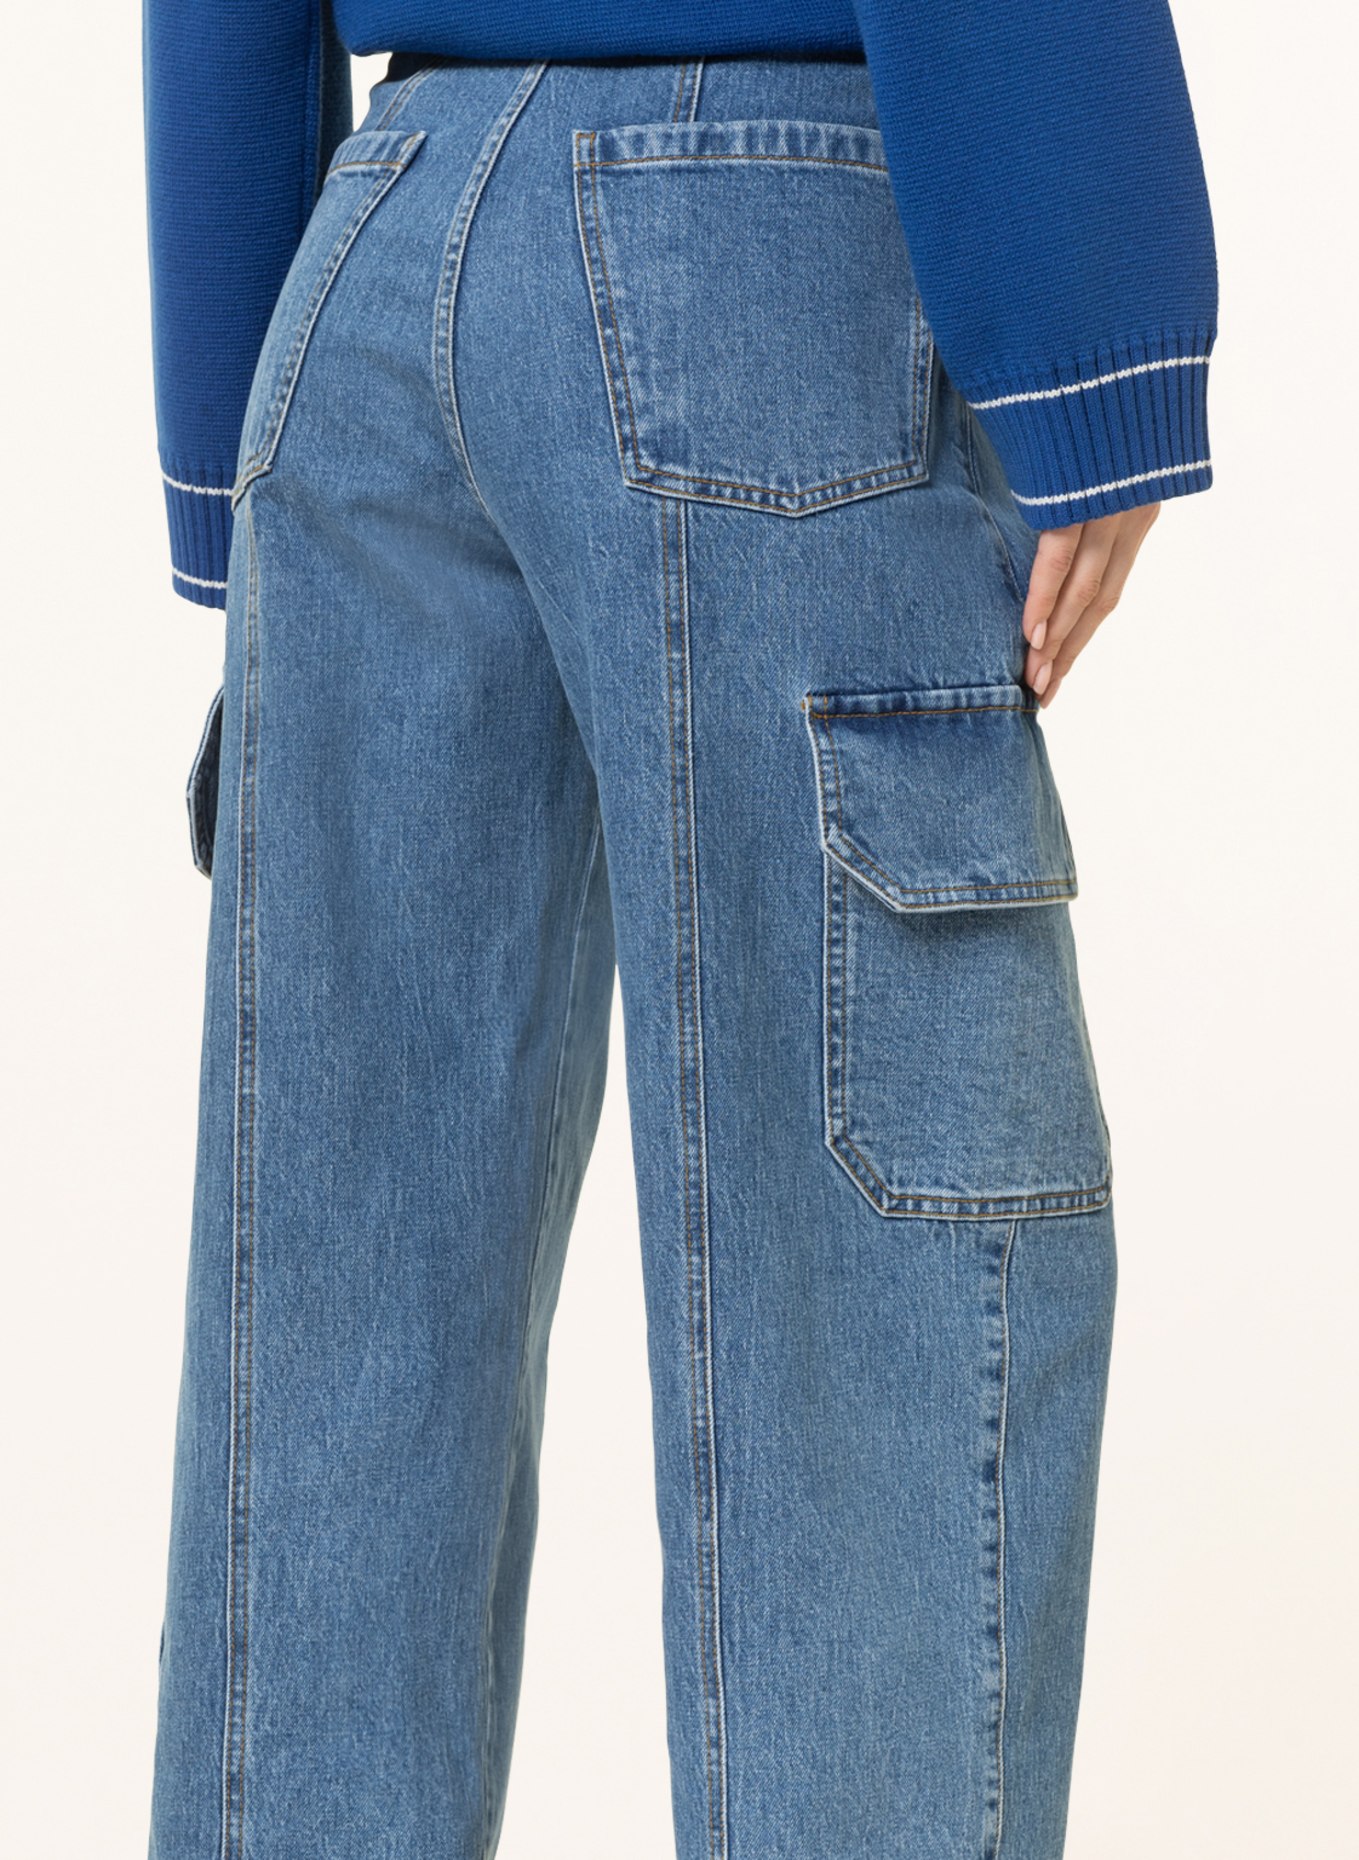 BAUM UND PFERDGARTEN Cargo jeans NACHI, Color: C6228 Washed Ligthblue Denim (Image 5)